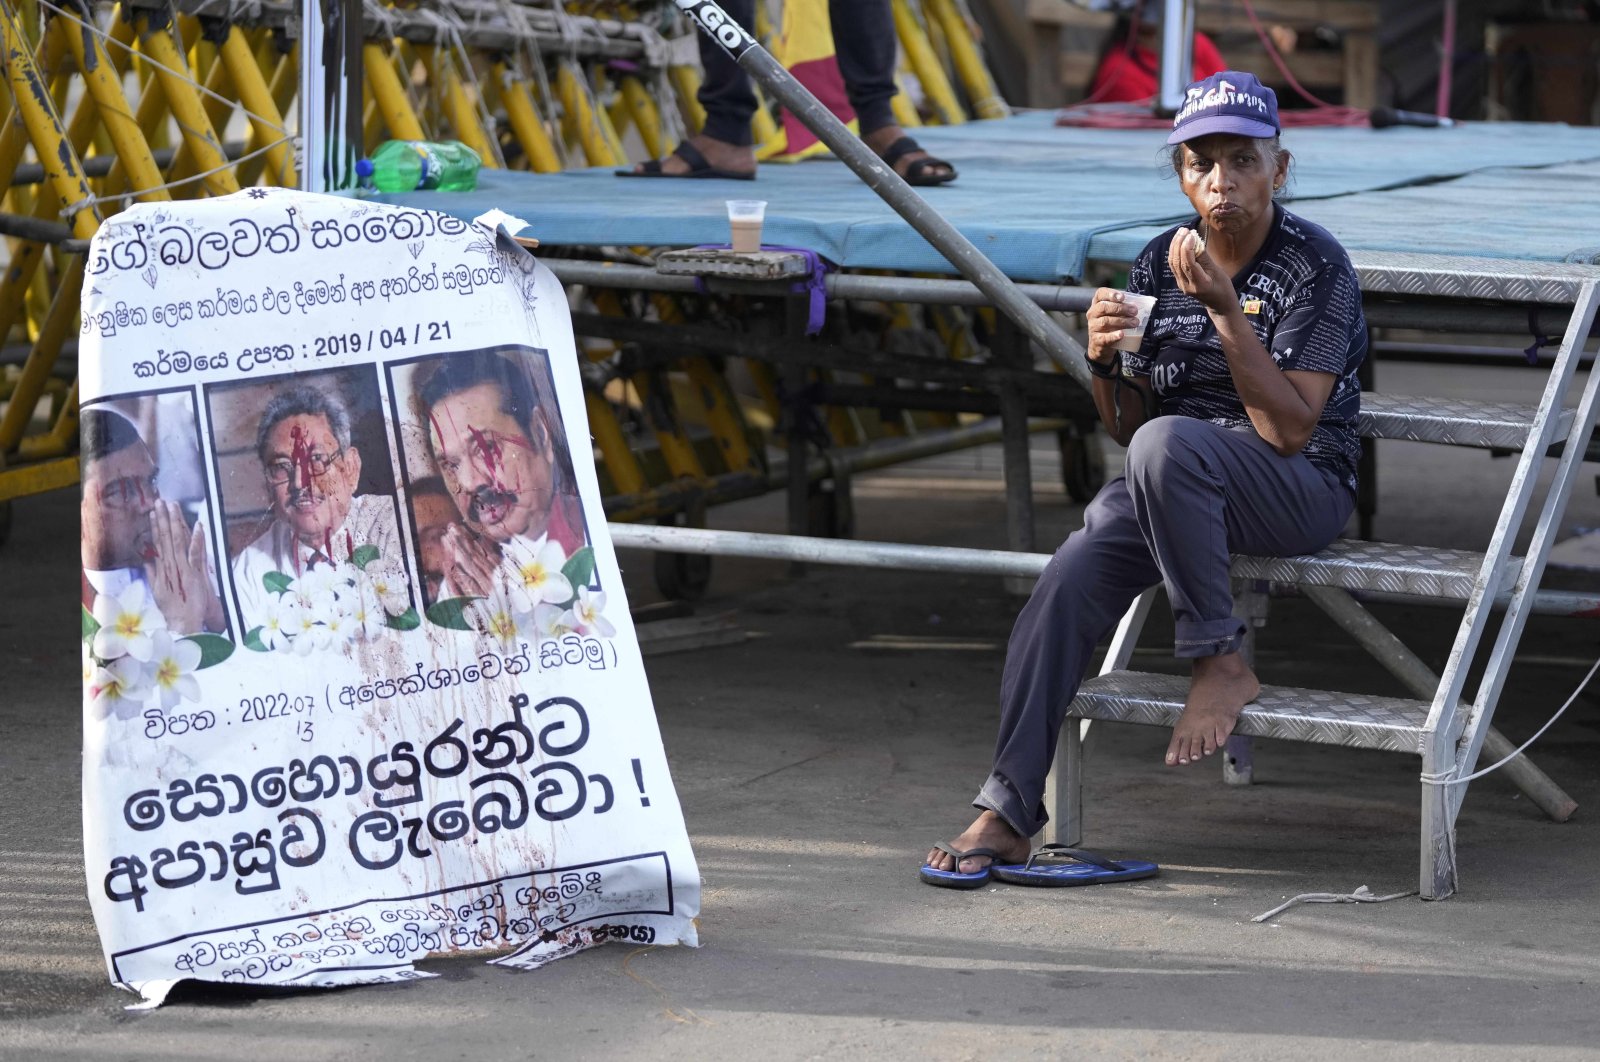 Grup mencari penangkapan mantan presiden Sri Lanka karena kejahatan perang